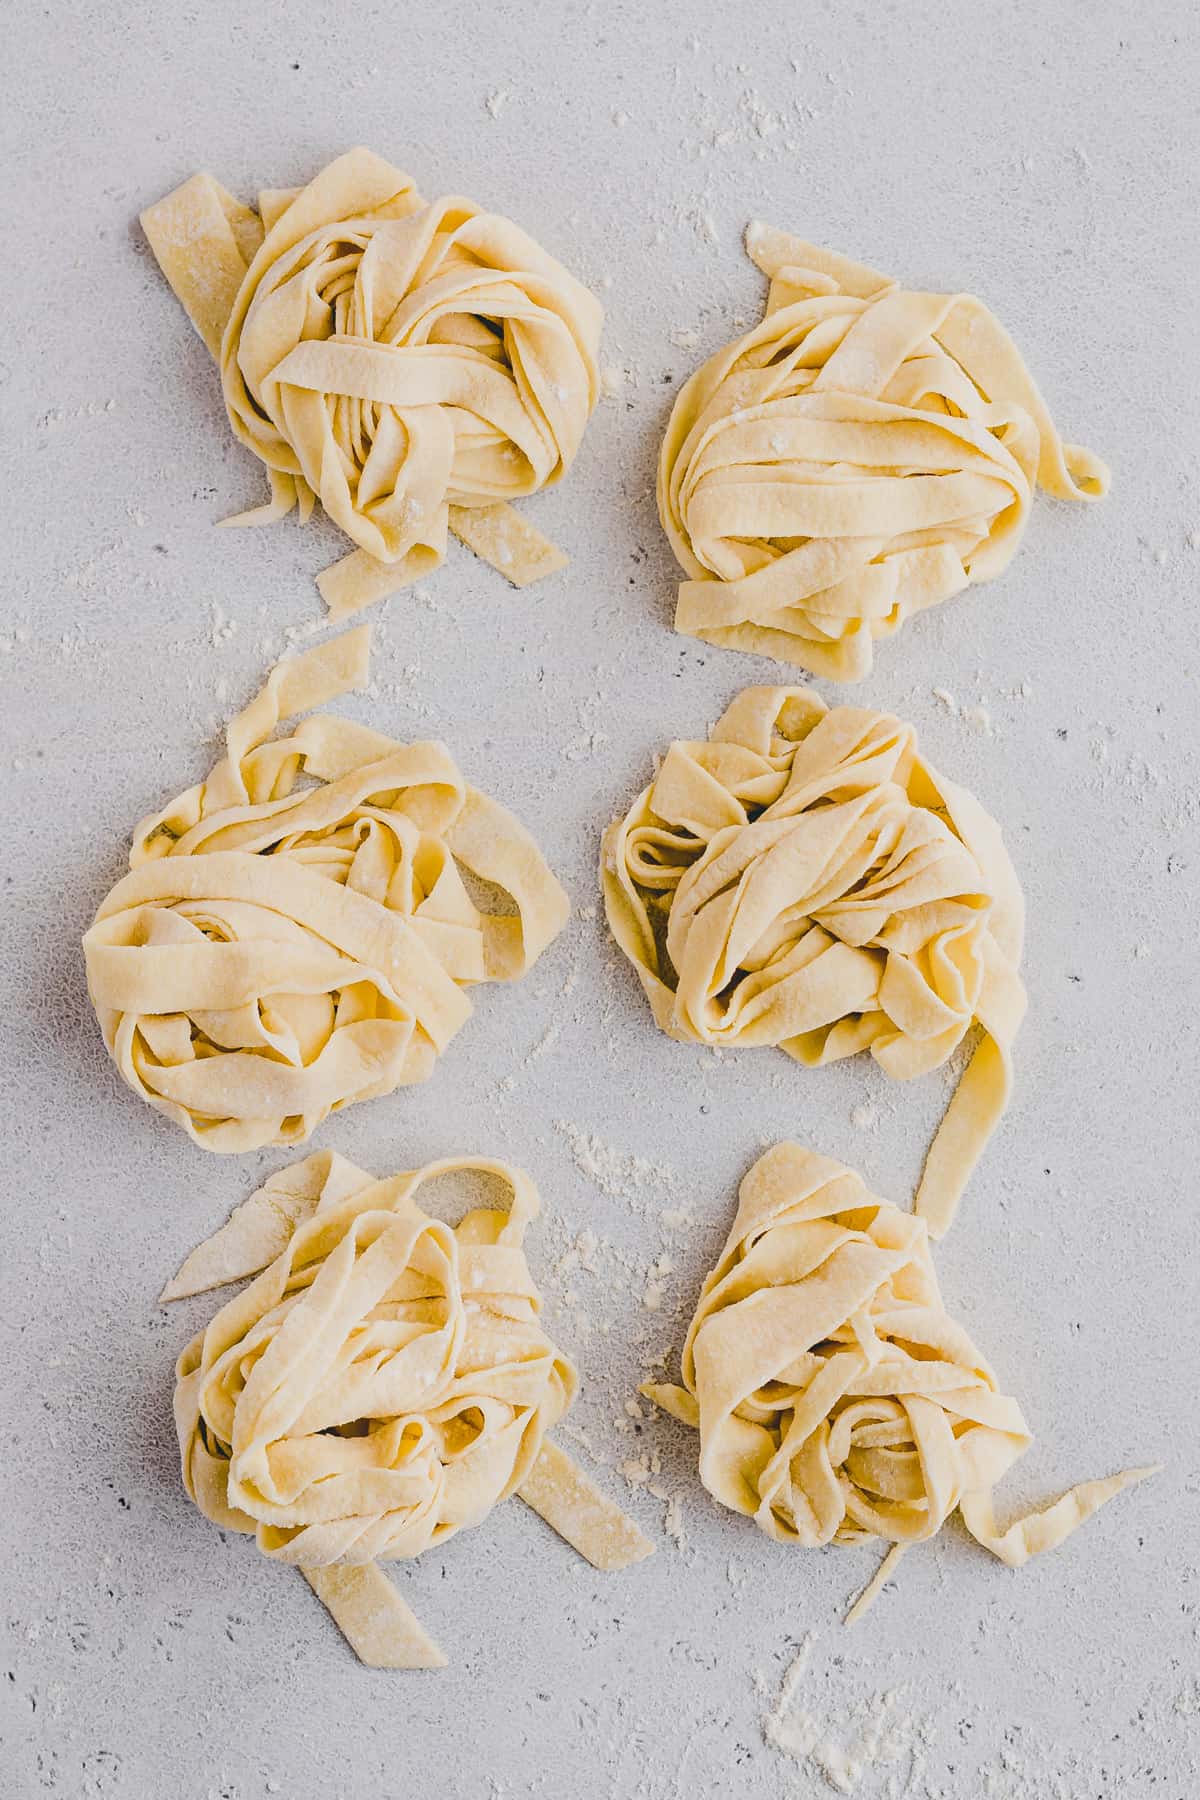 fresh pasta dough cut into noodles